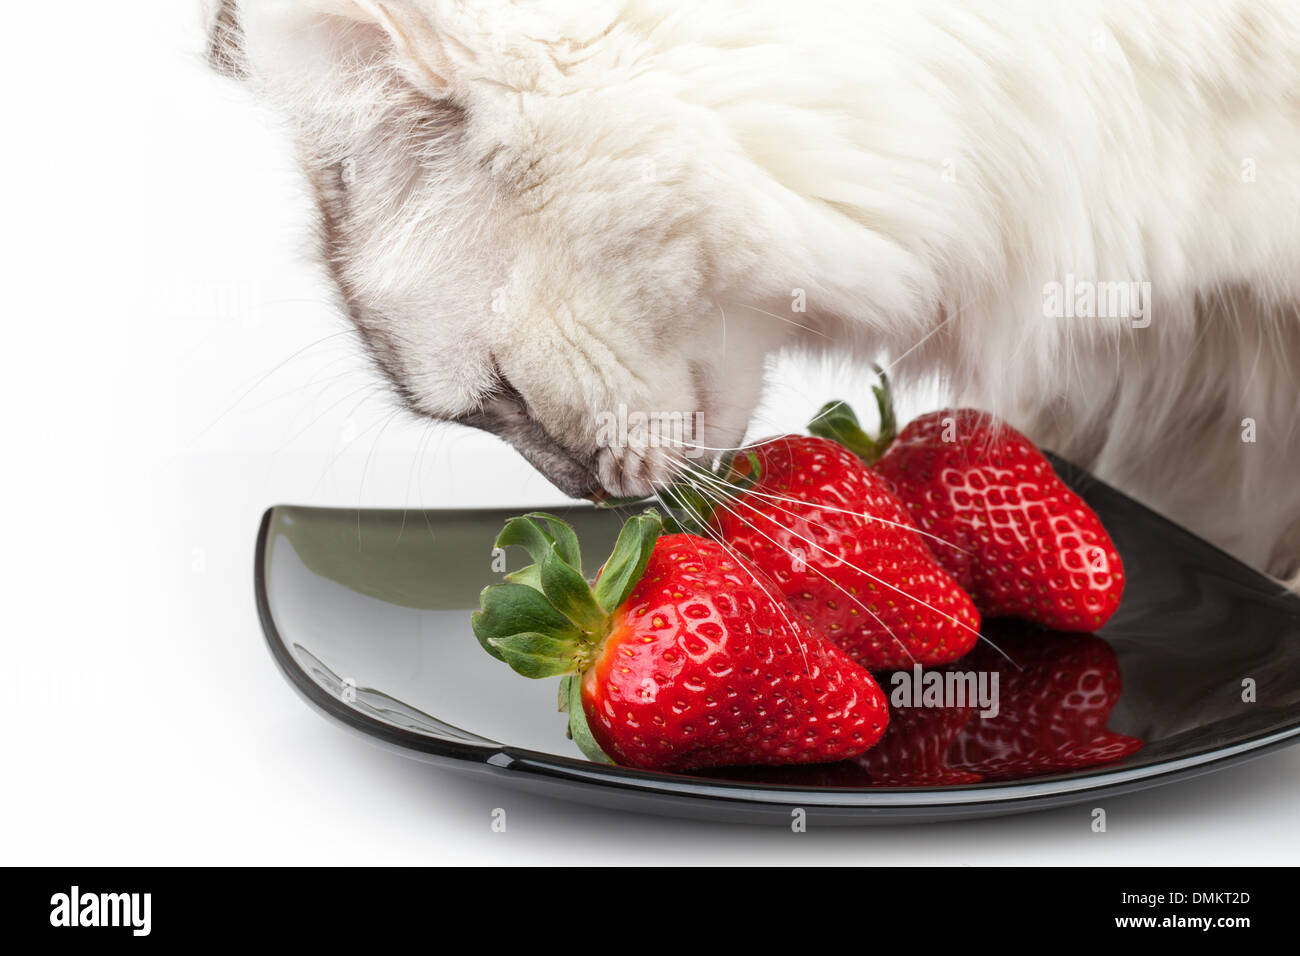 Bianco attentamente il gatto mangia fresco fragola rossa dalla piastra nera Foto Stock